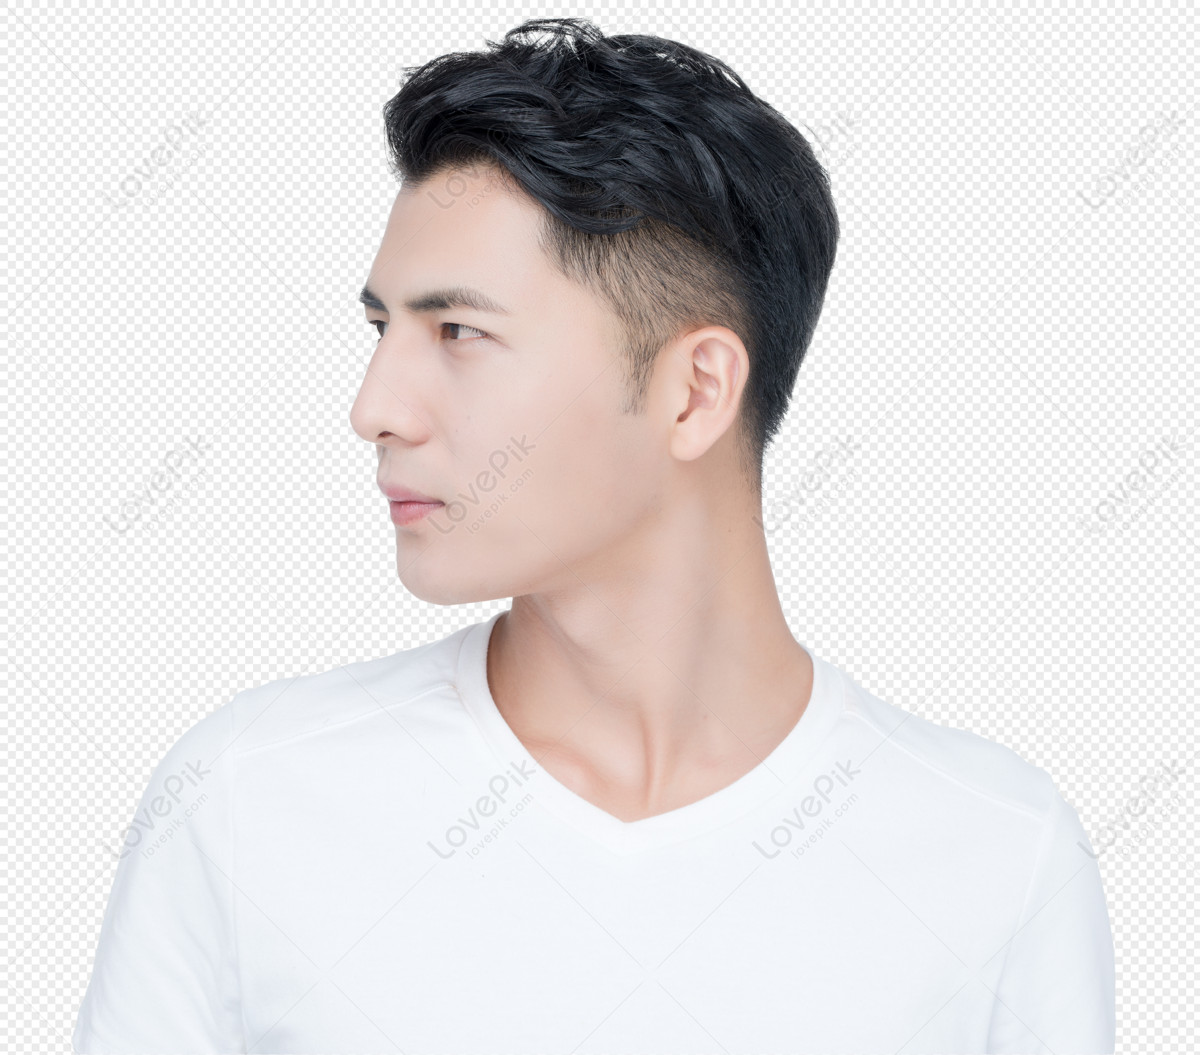 Man Face Skin Png Transparent Image - Model Man Face Png,Man Face